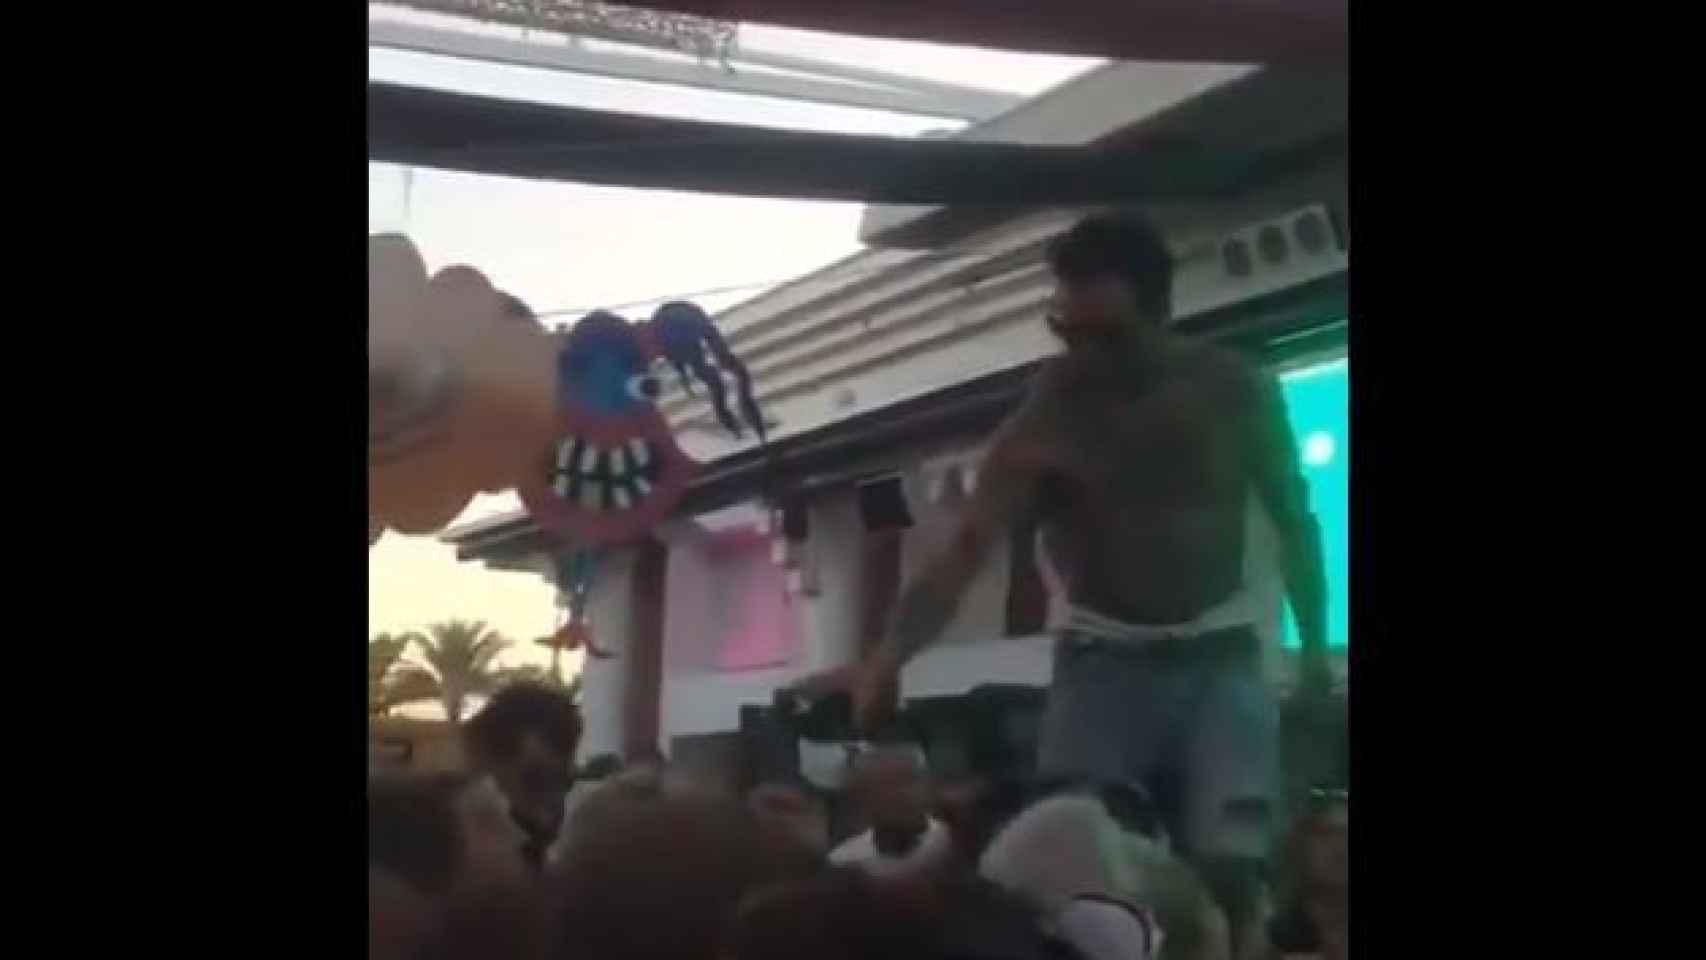 Fragmento del vídeo donde se ve al DJ dando alcohol de la misma botella a varios asistentes.